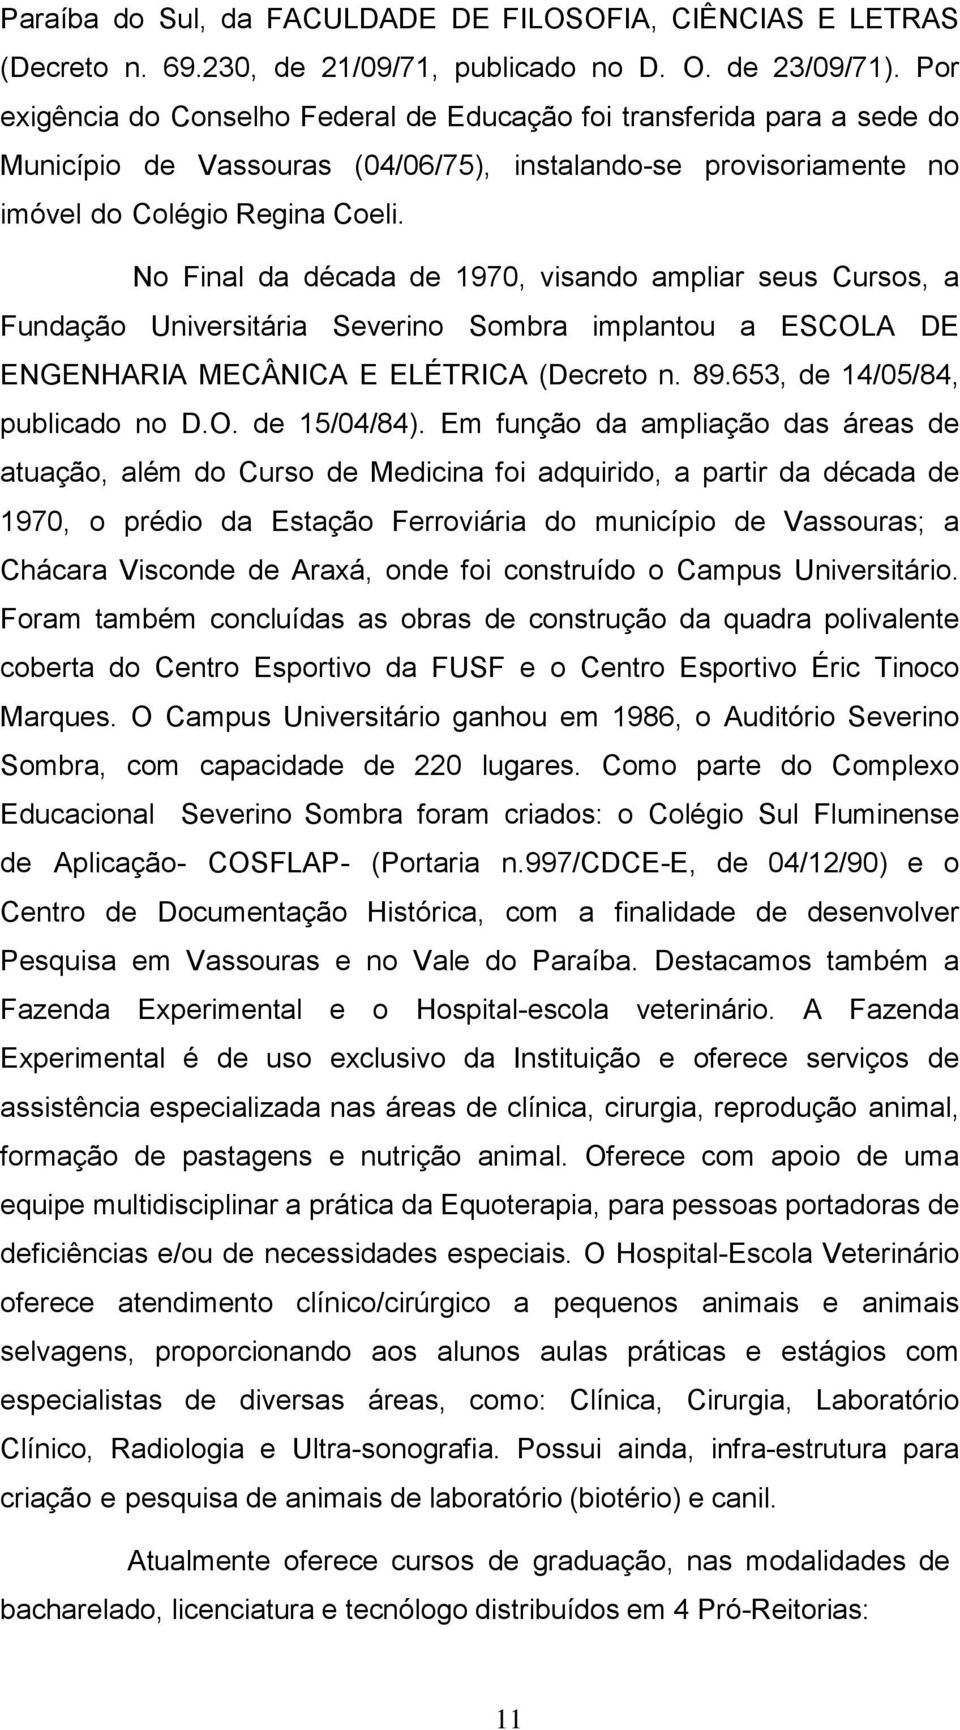 No Final da década de 1970, visando ampliar seus Cursos, a Fundação Universitária Severino Sombra implantou a ESCOLA DE ENGENHARIA MECÂNICA E ELÉTRICA (Decreto n. 89.653, de 14/05/84, publicado no D.